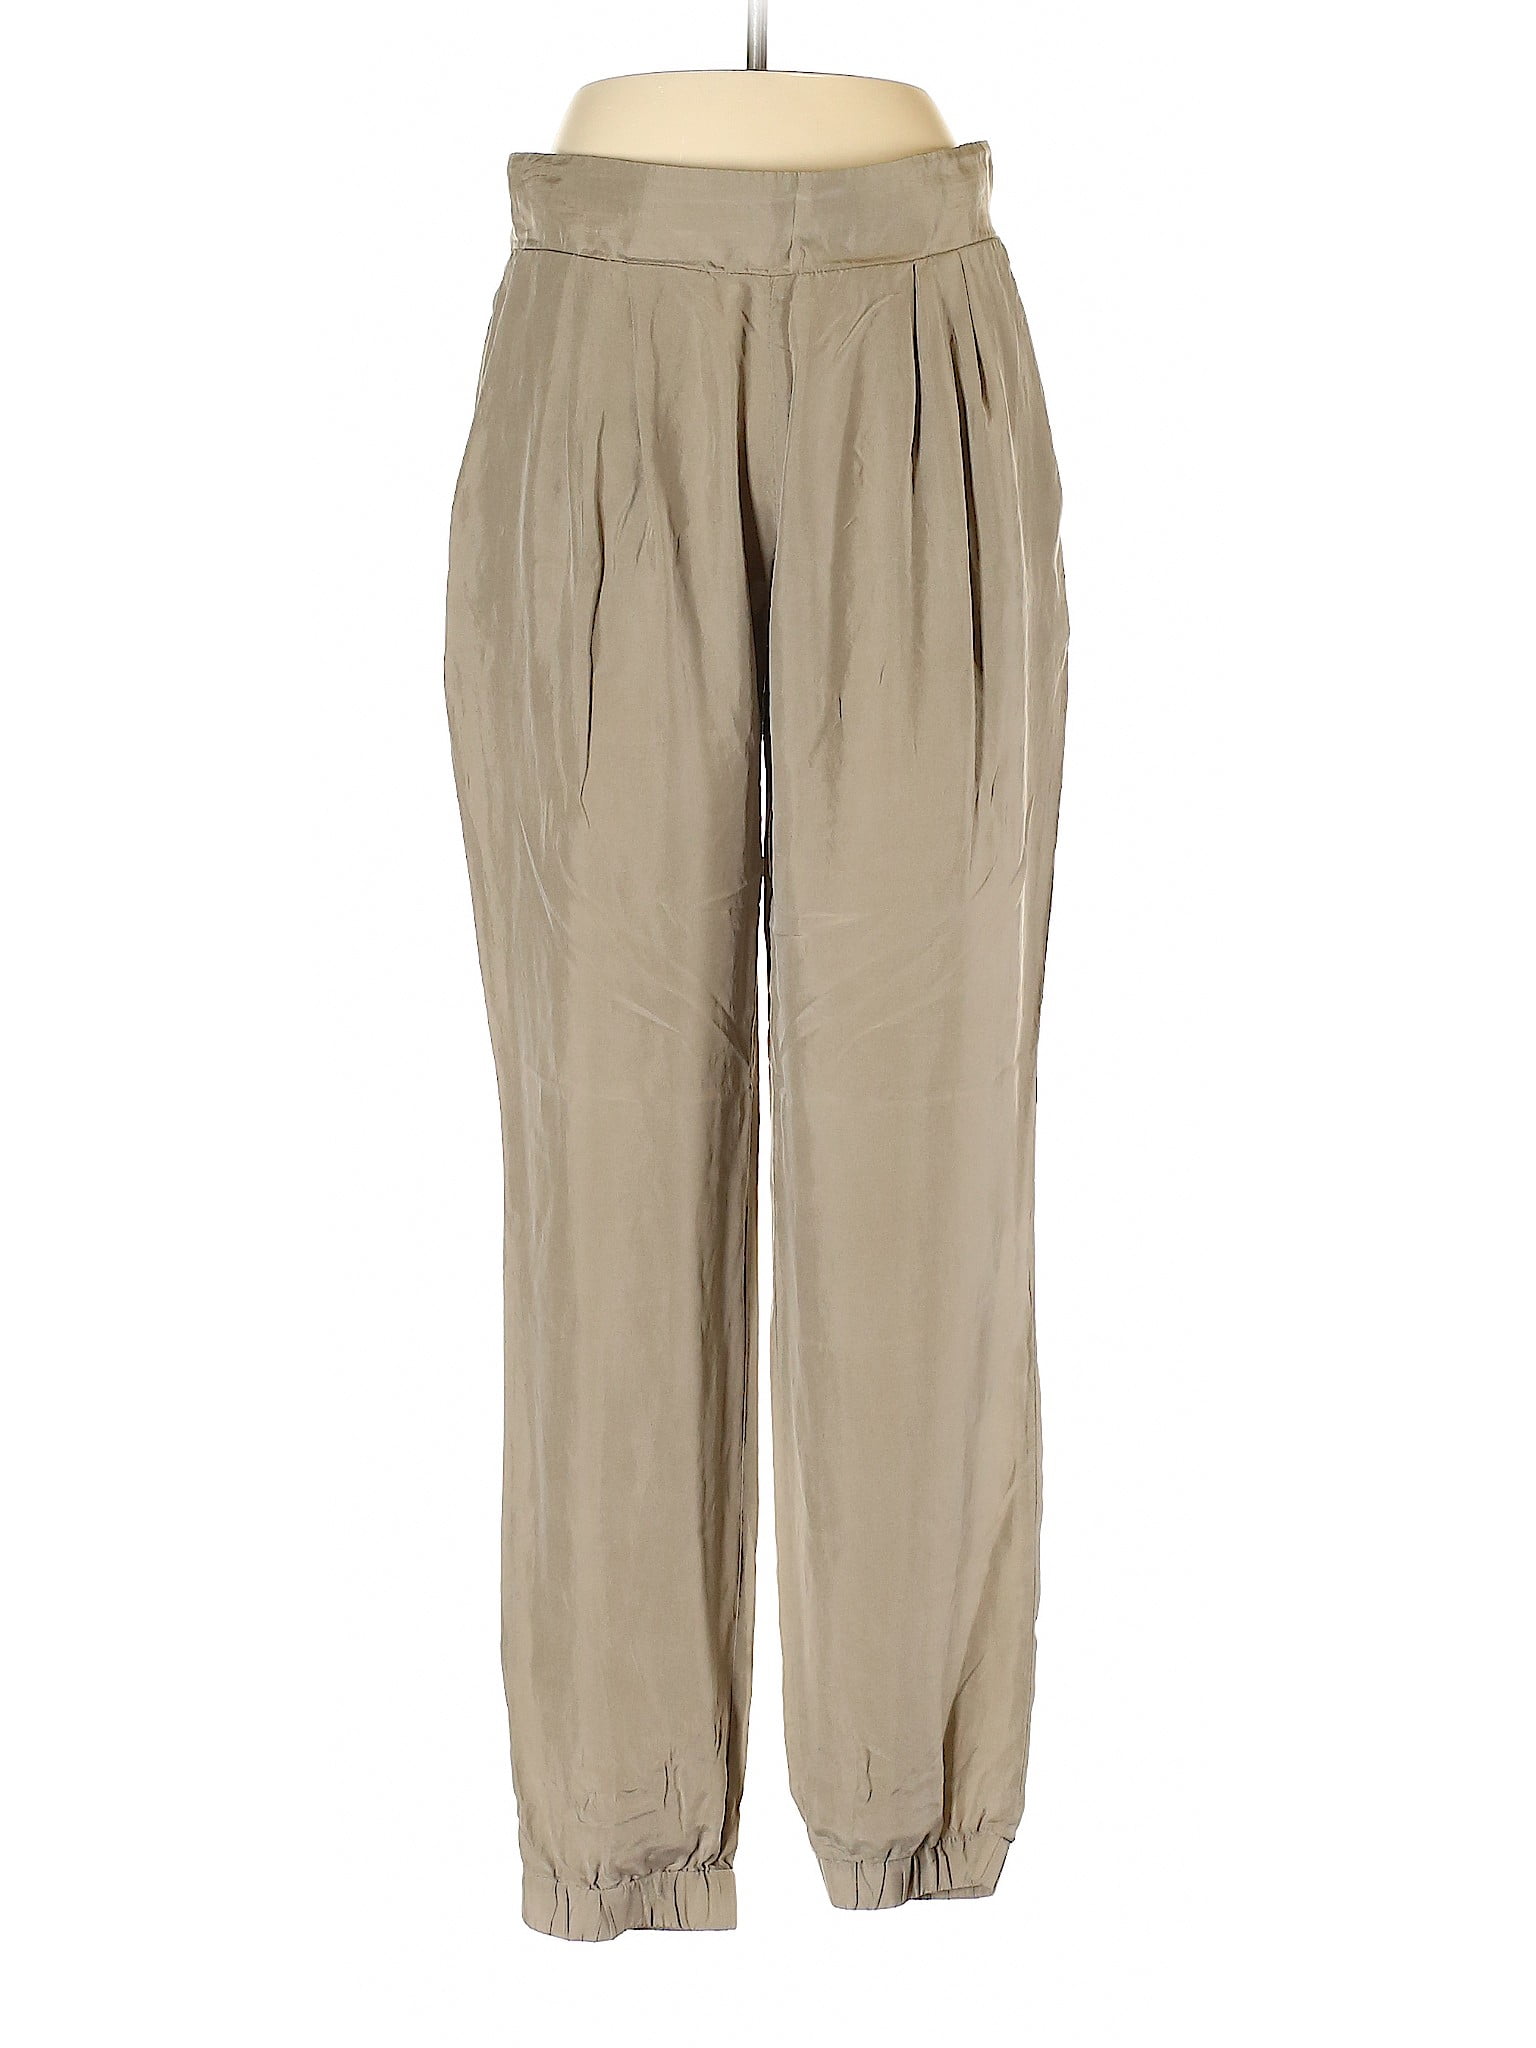 Emporio Armani - Pre-Owned Emporio Armani Women's Size 42 Casual Pants ...